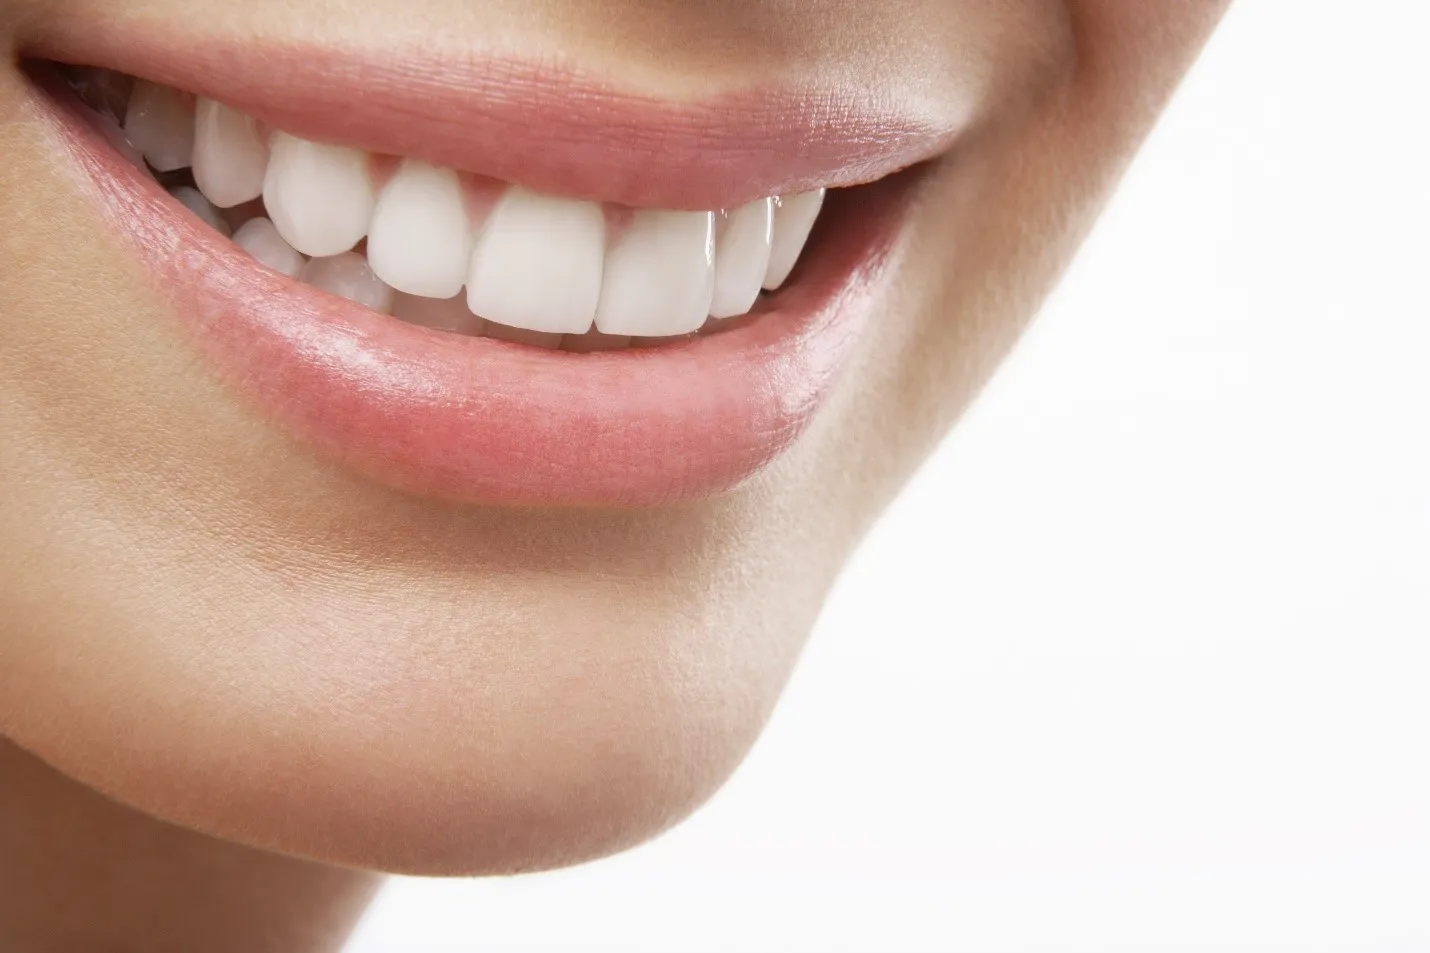 Vệ sinh răng miệng đúng cách phòng ngừa bệnh và giúp răng sáng đẹp